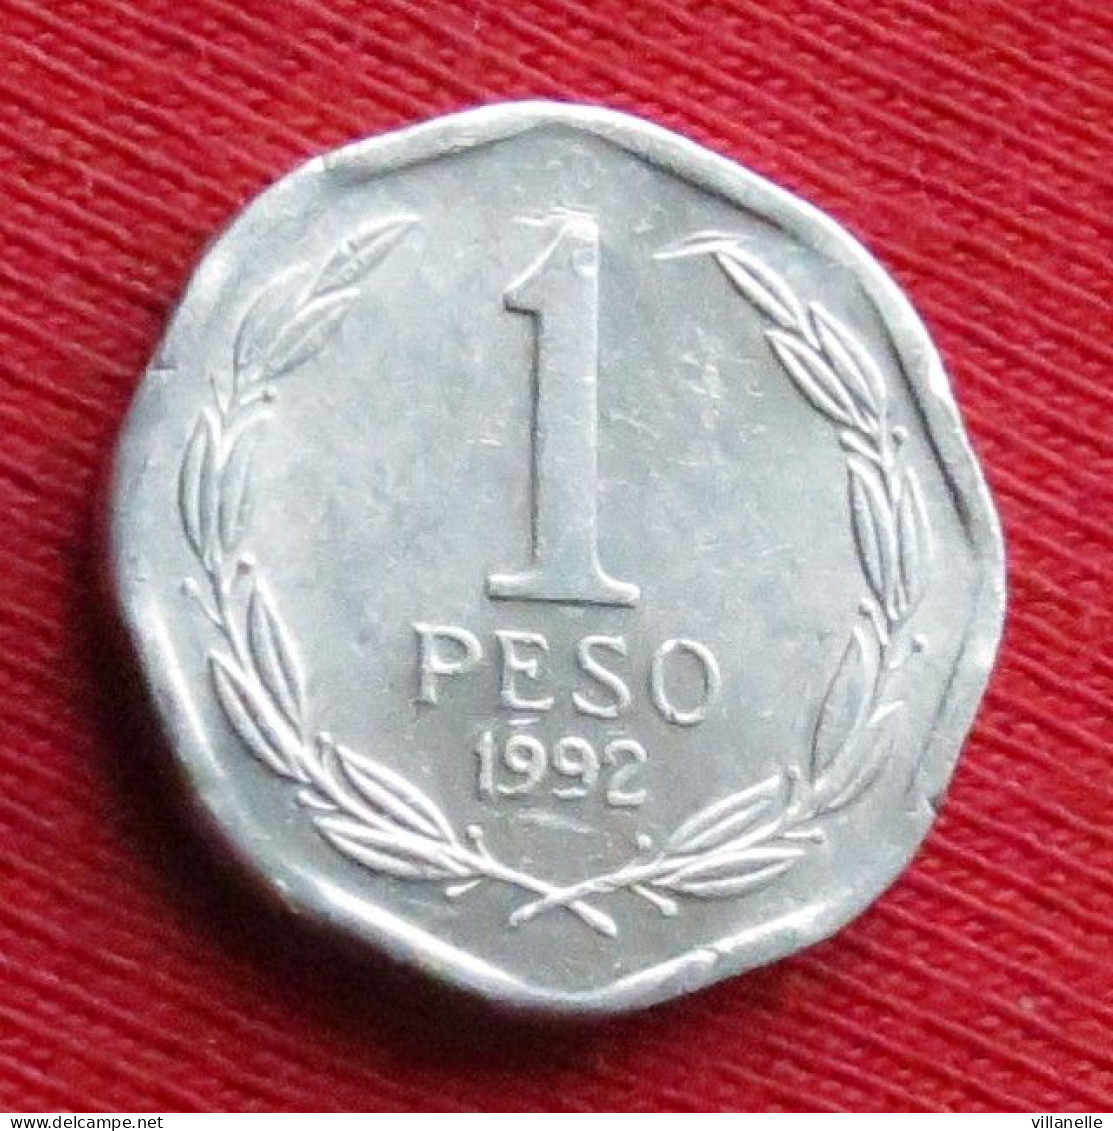 Chile 1 Peso 1992 Chili  W ºº - Chile